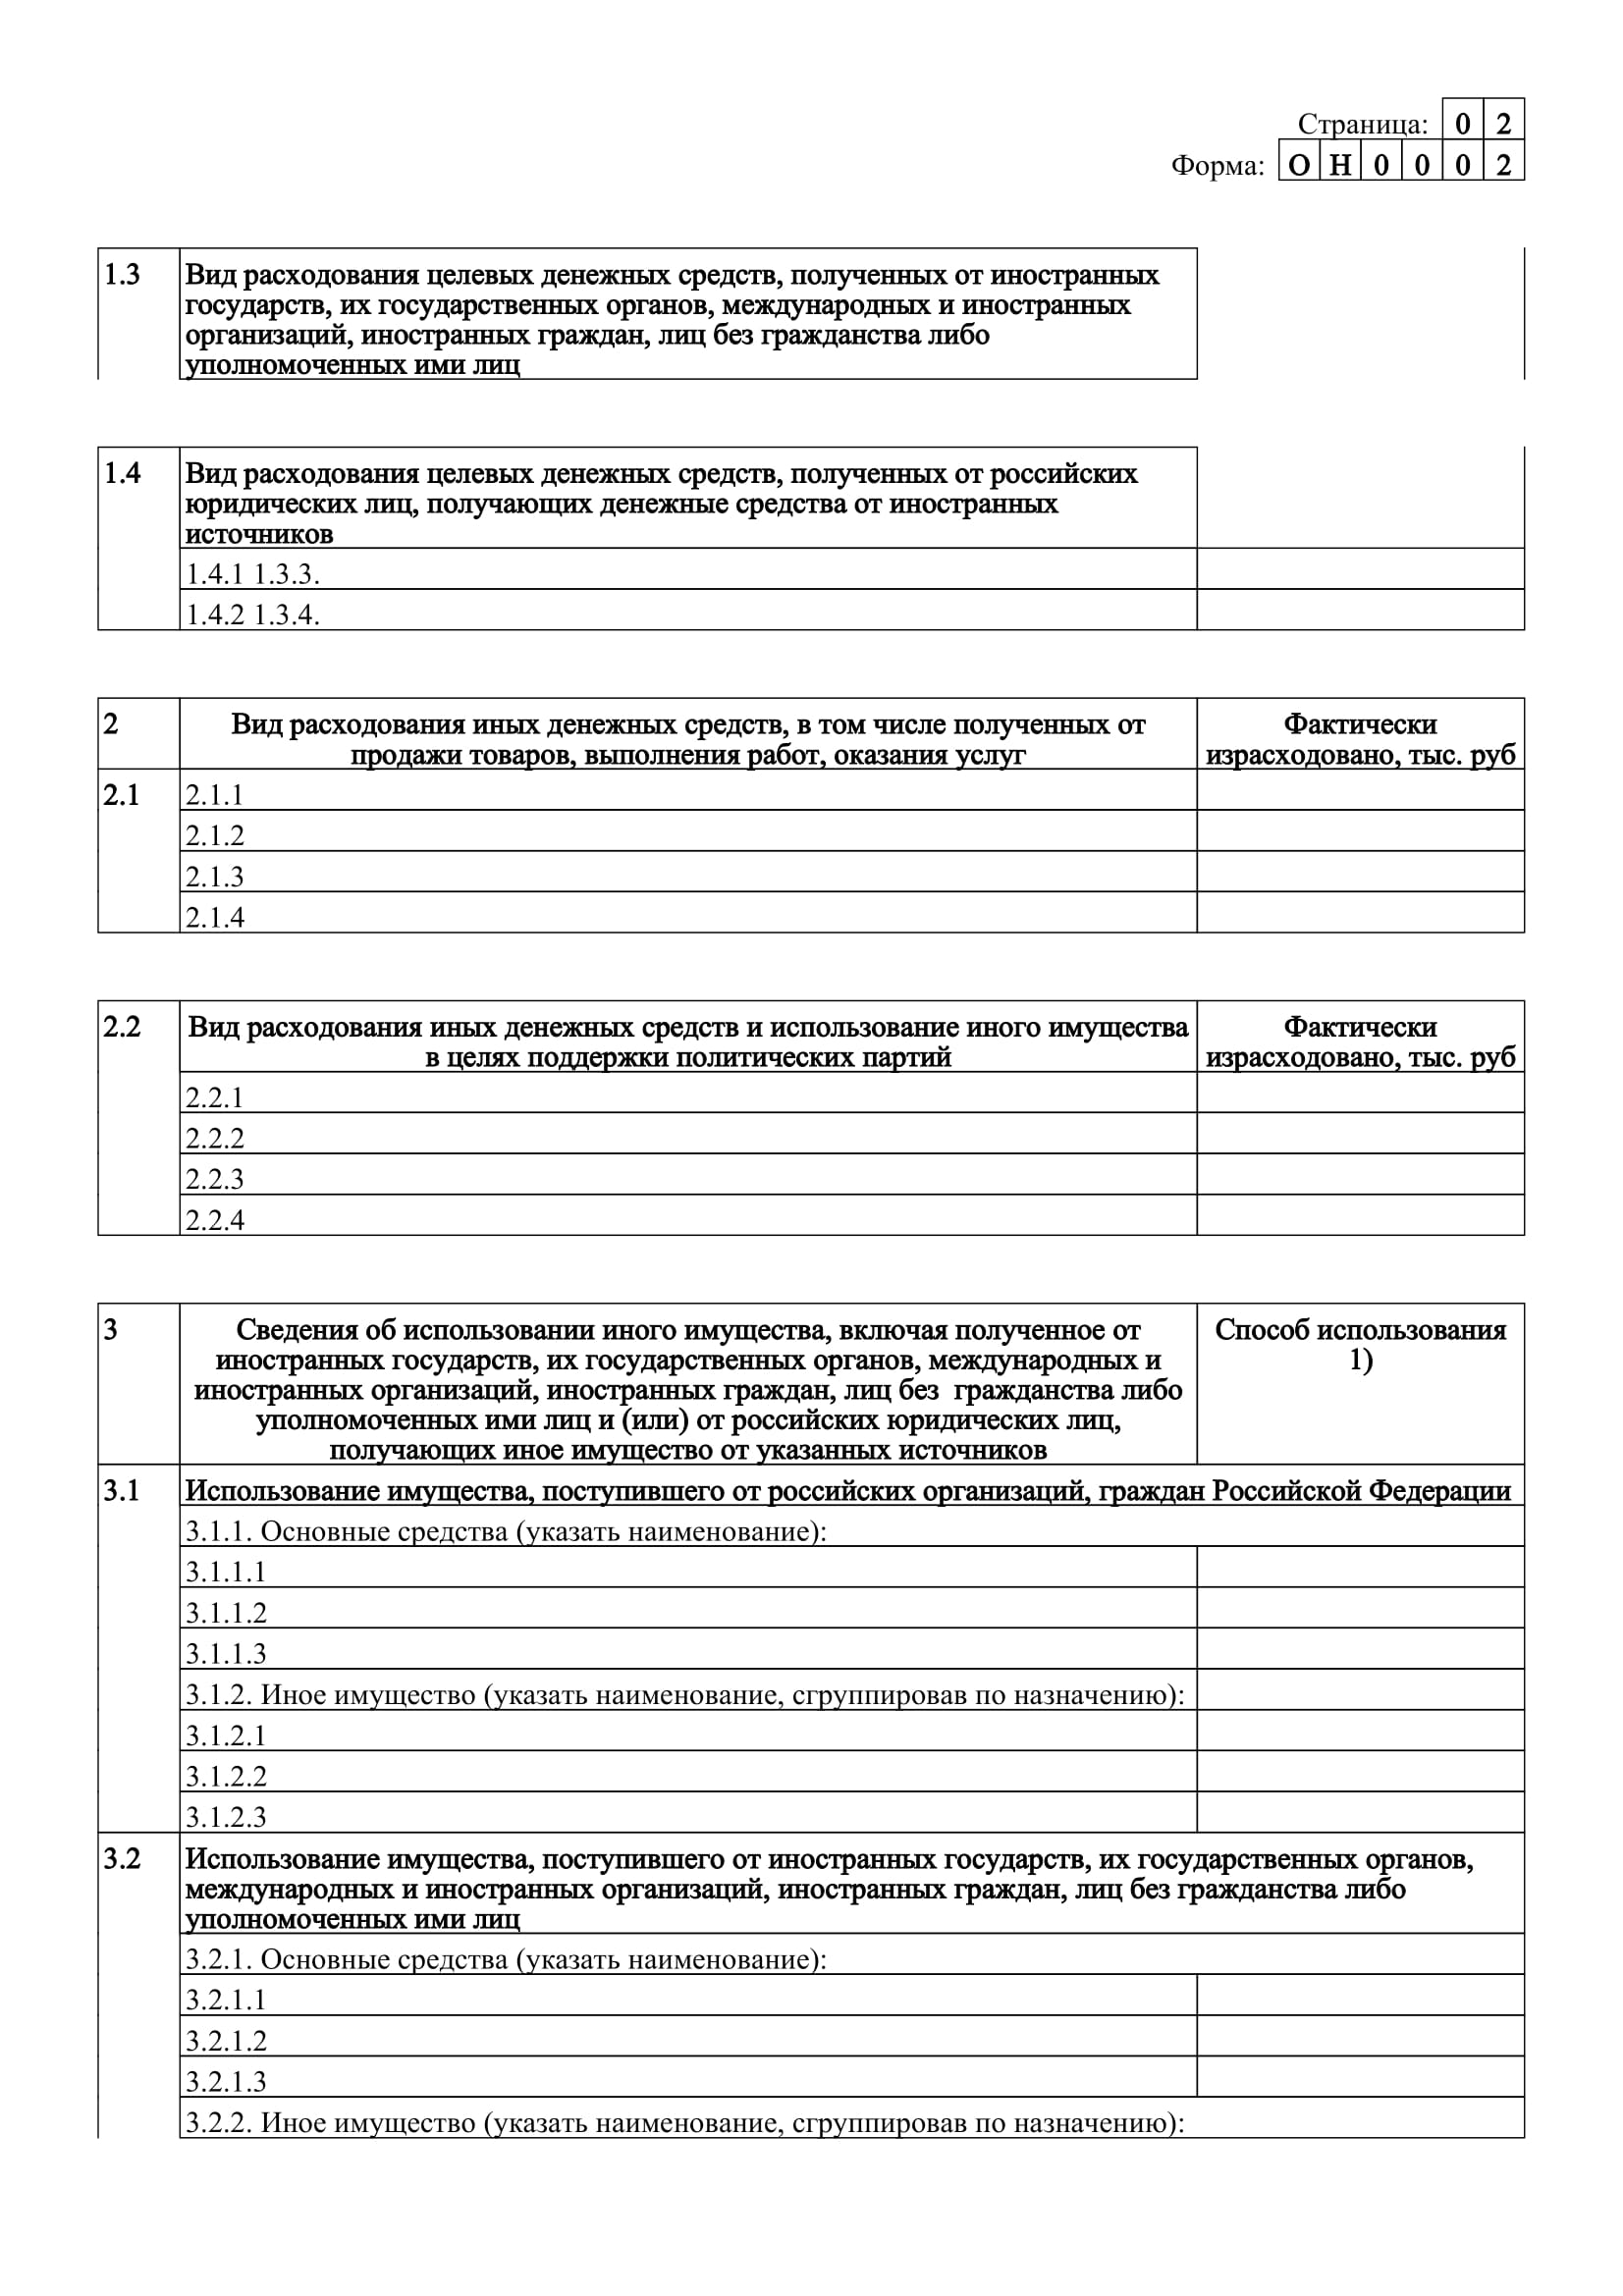 Отчет Адвокатской палаты в Минюст за 2021 год